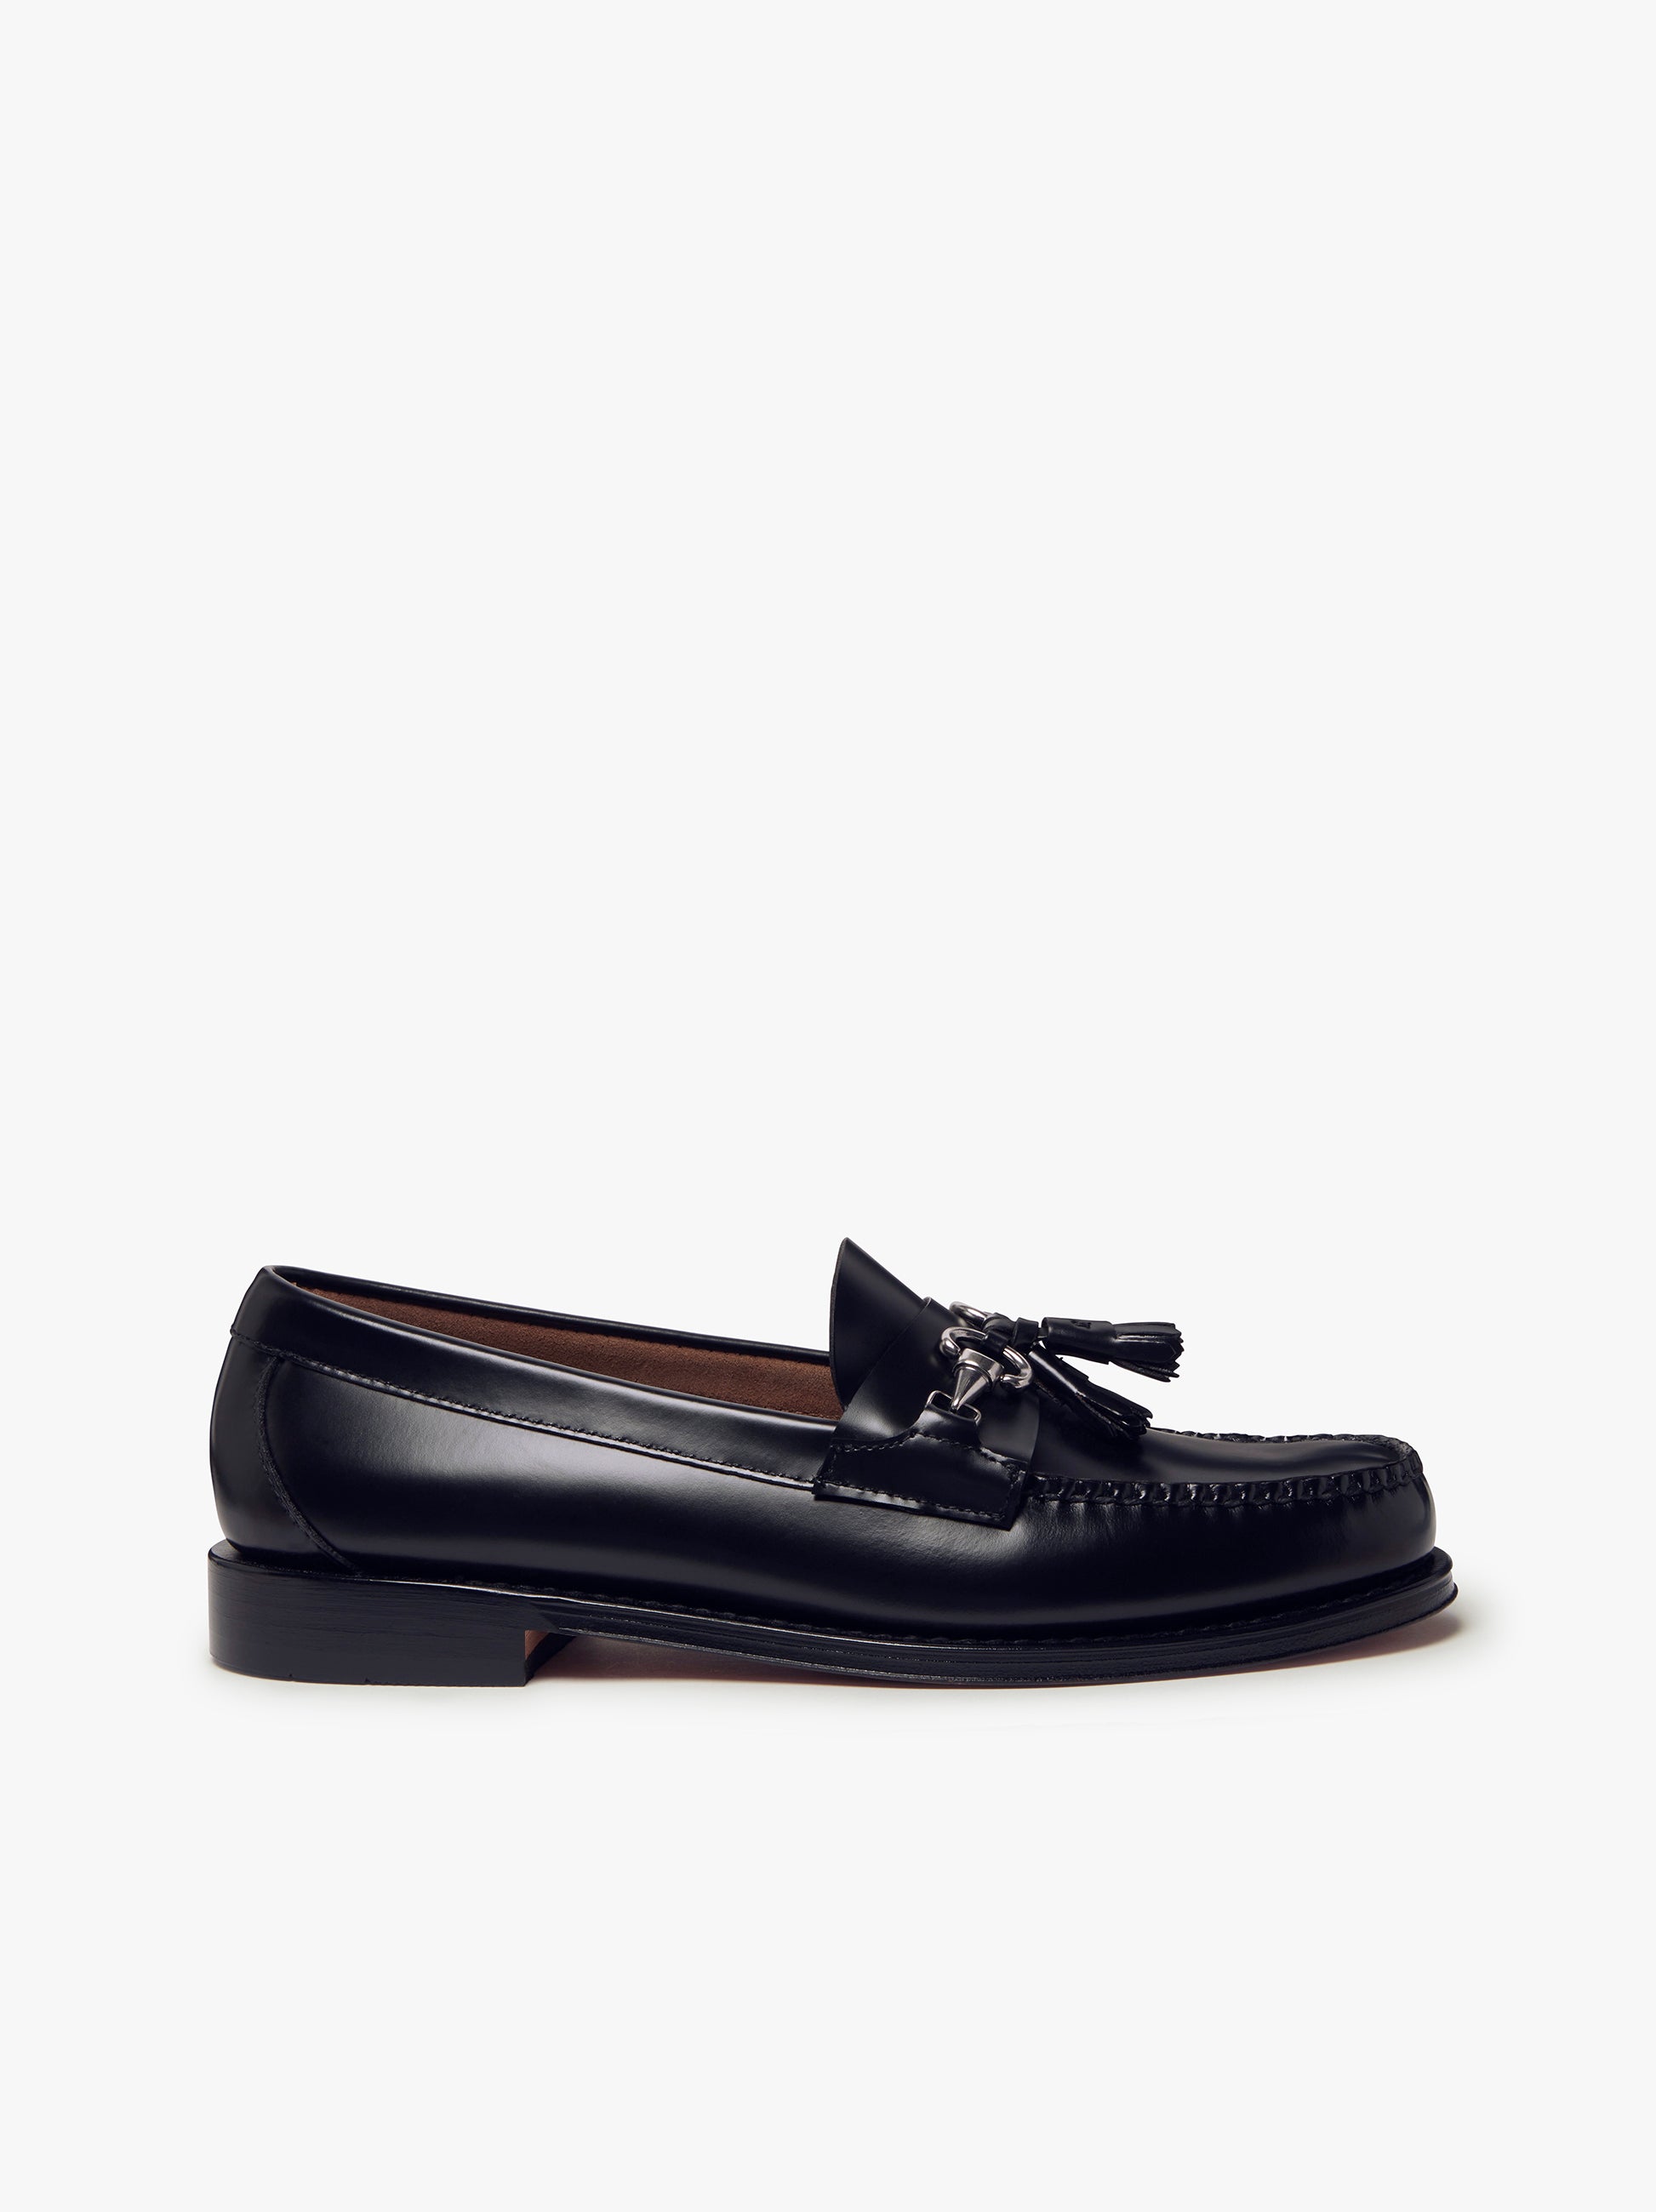 【新品】G.H.BASS Lincoln tassel-trim loafers60131-56723